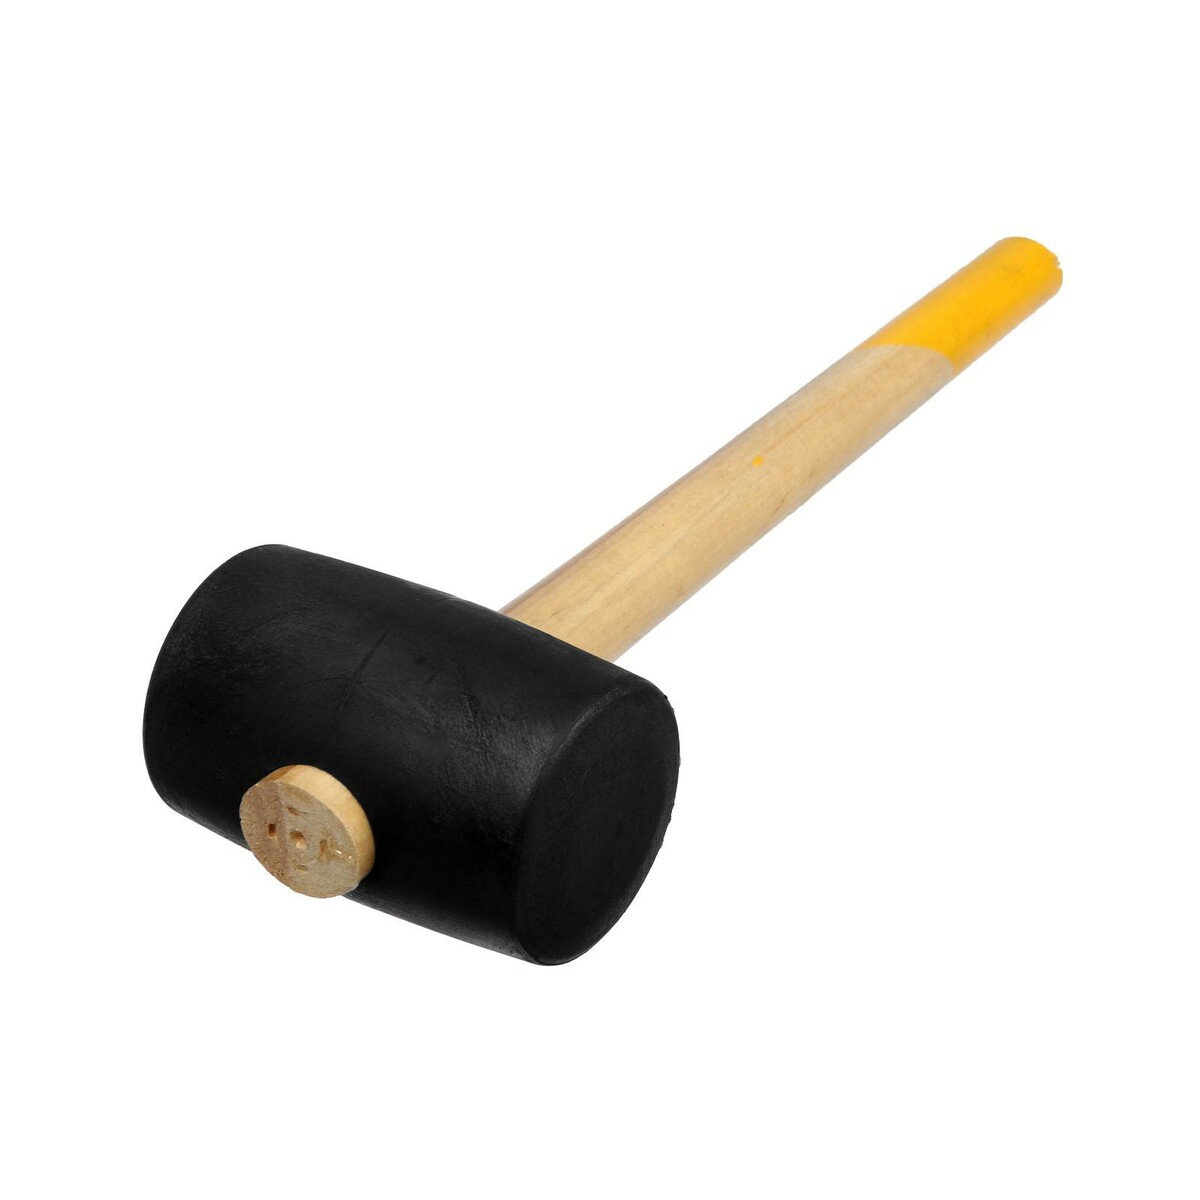 Киянка тундра, деревянная рукоятка, черная резина, 65 мм, 680 г киянка лом деревянная рукоятка черная резина 45 мм 200 г